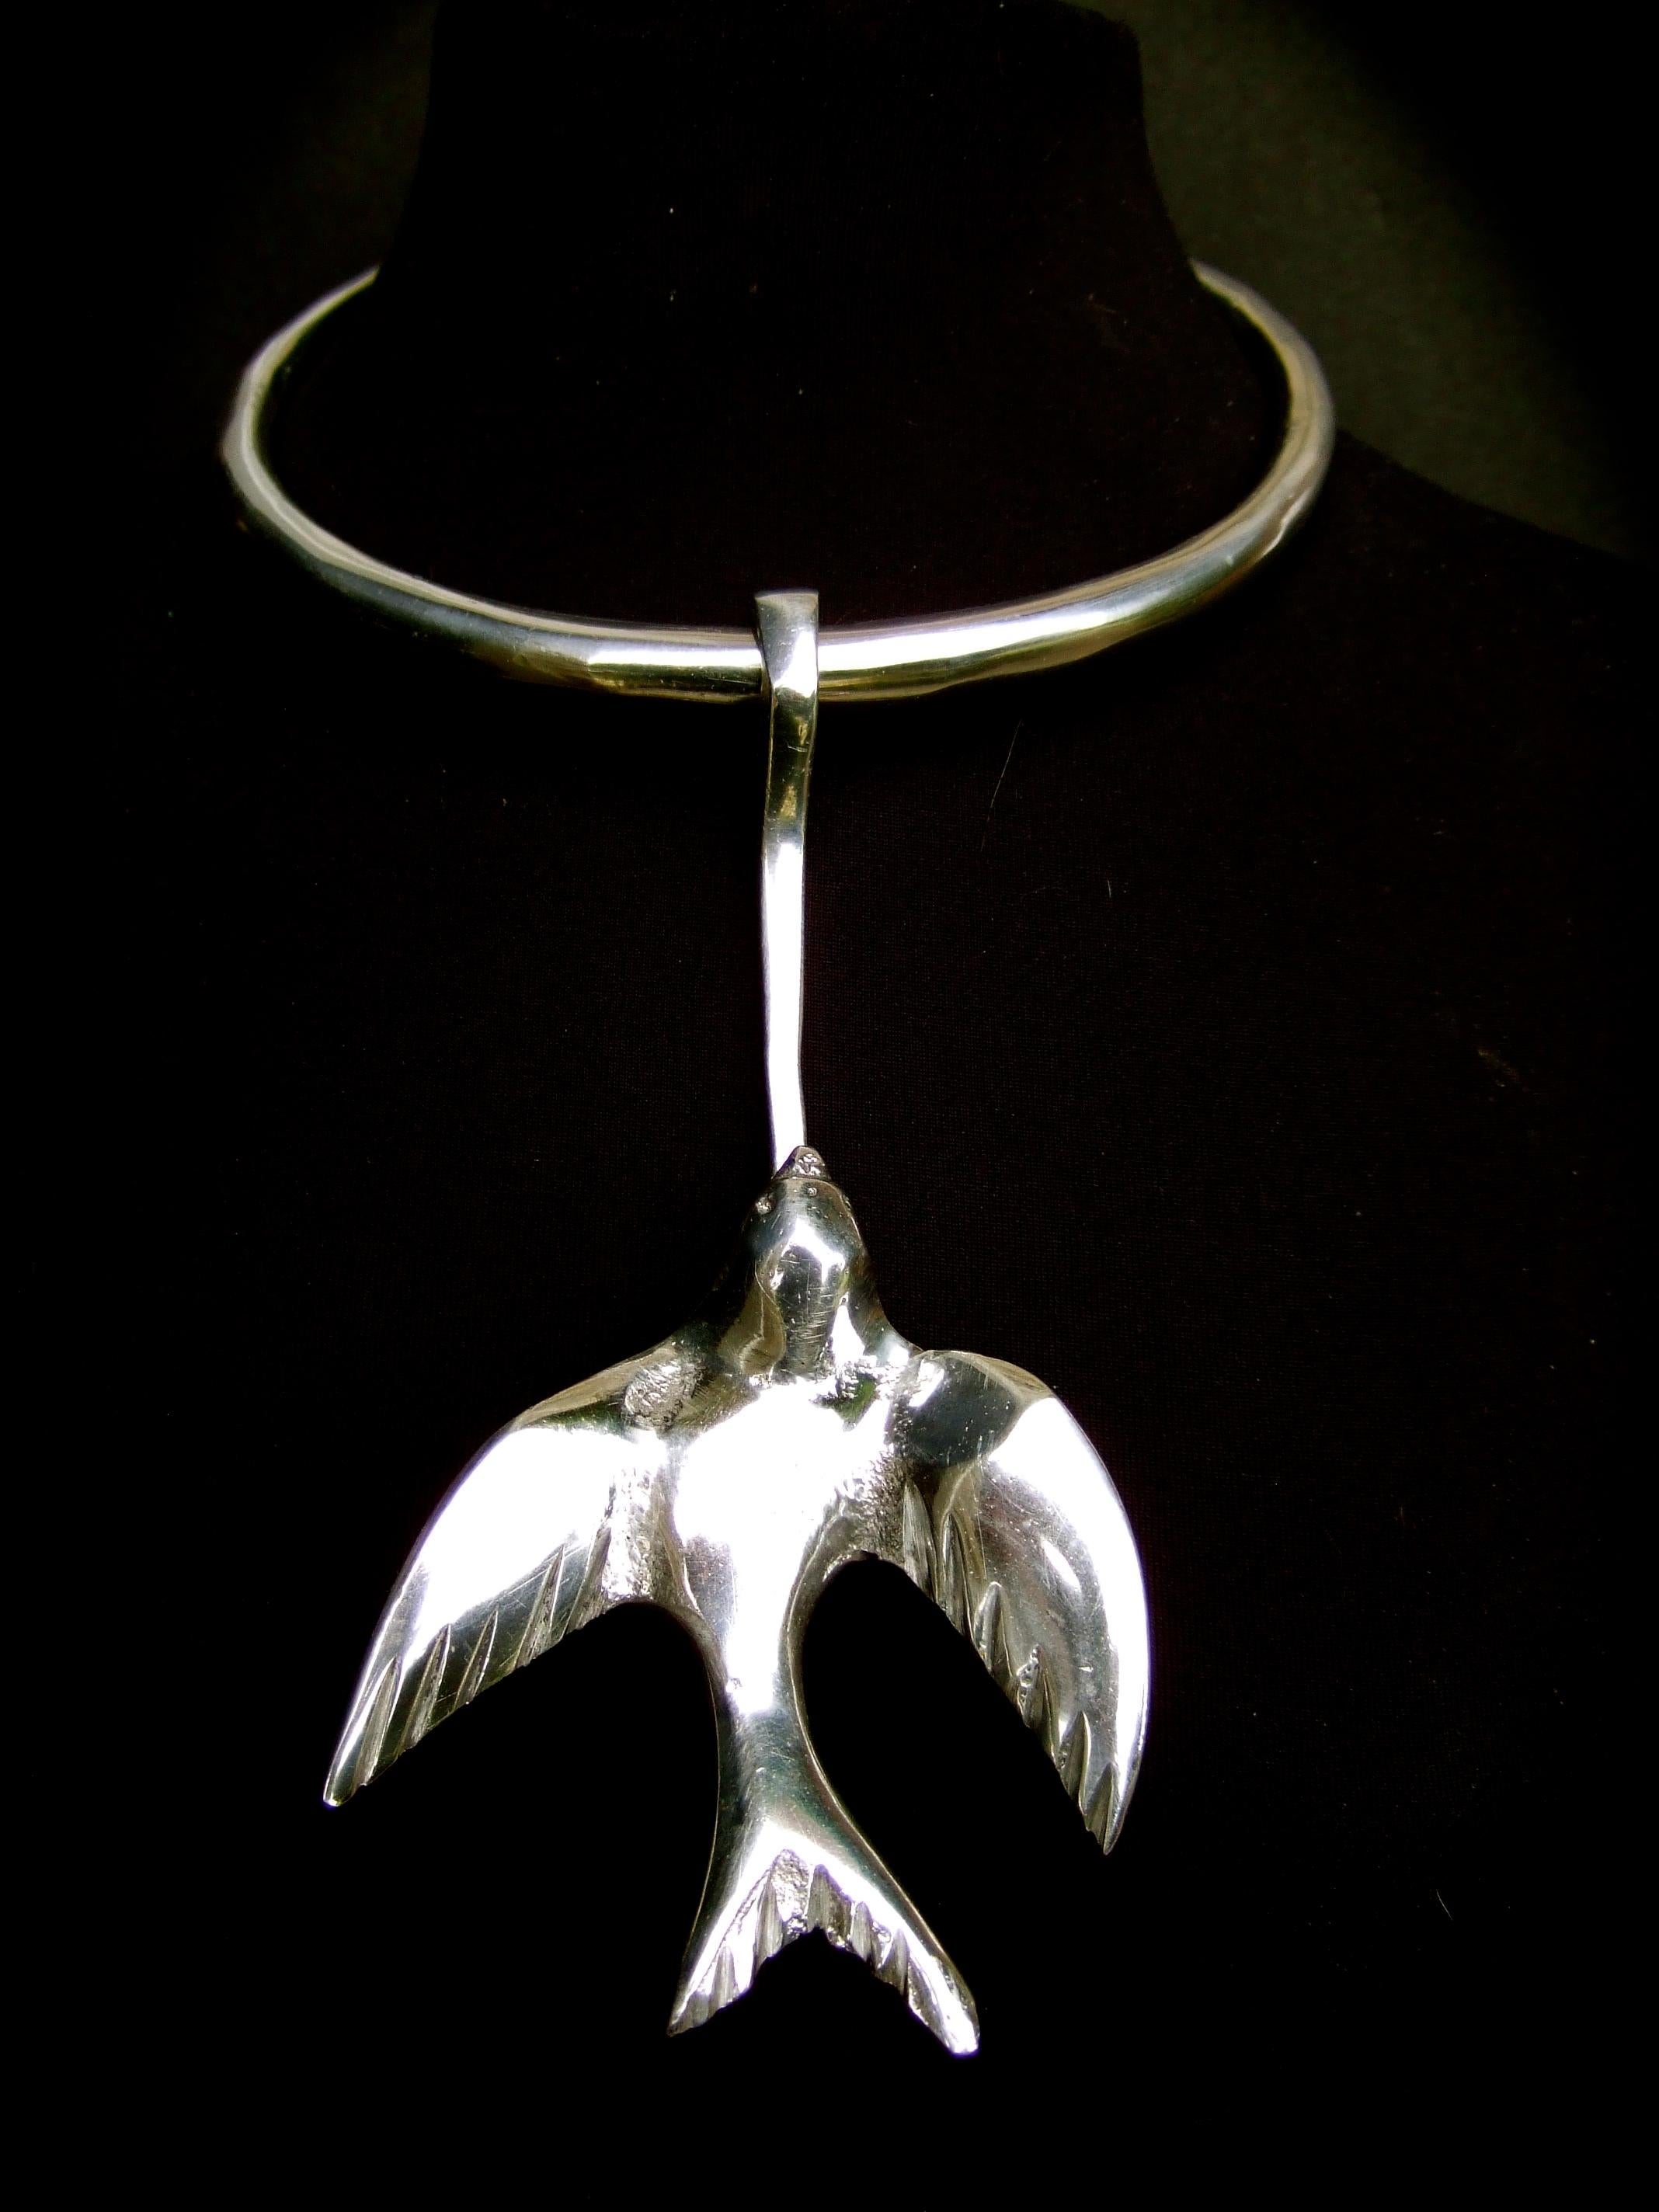 Avantgardistische Halskette mit Vogelmotiv aus versilbertem Metall, 1970er Jahre 
Das einzigartige, handgefertigte Halsband besteht aus einem stabilen, versilberten Metallband.
Geschmückt mit einer großen versilberten, beweglichen, aufsteigenden